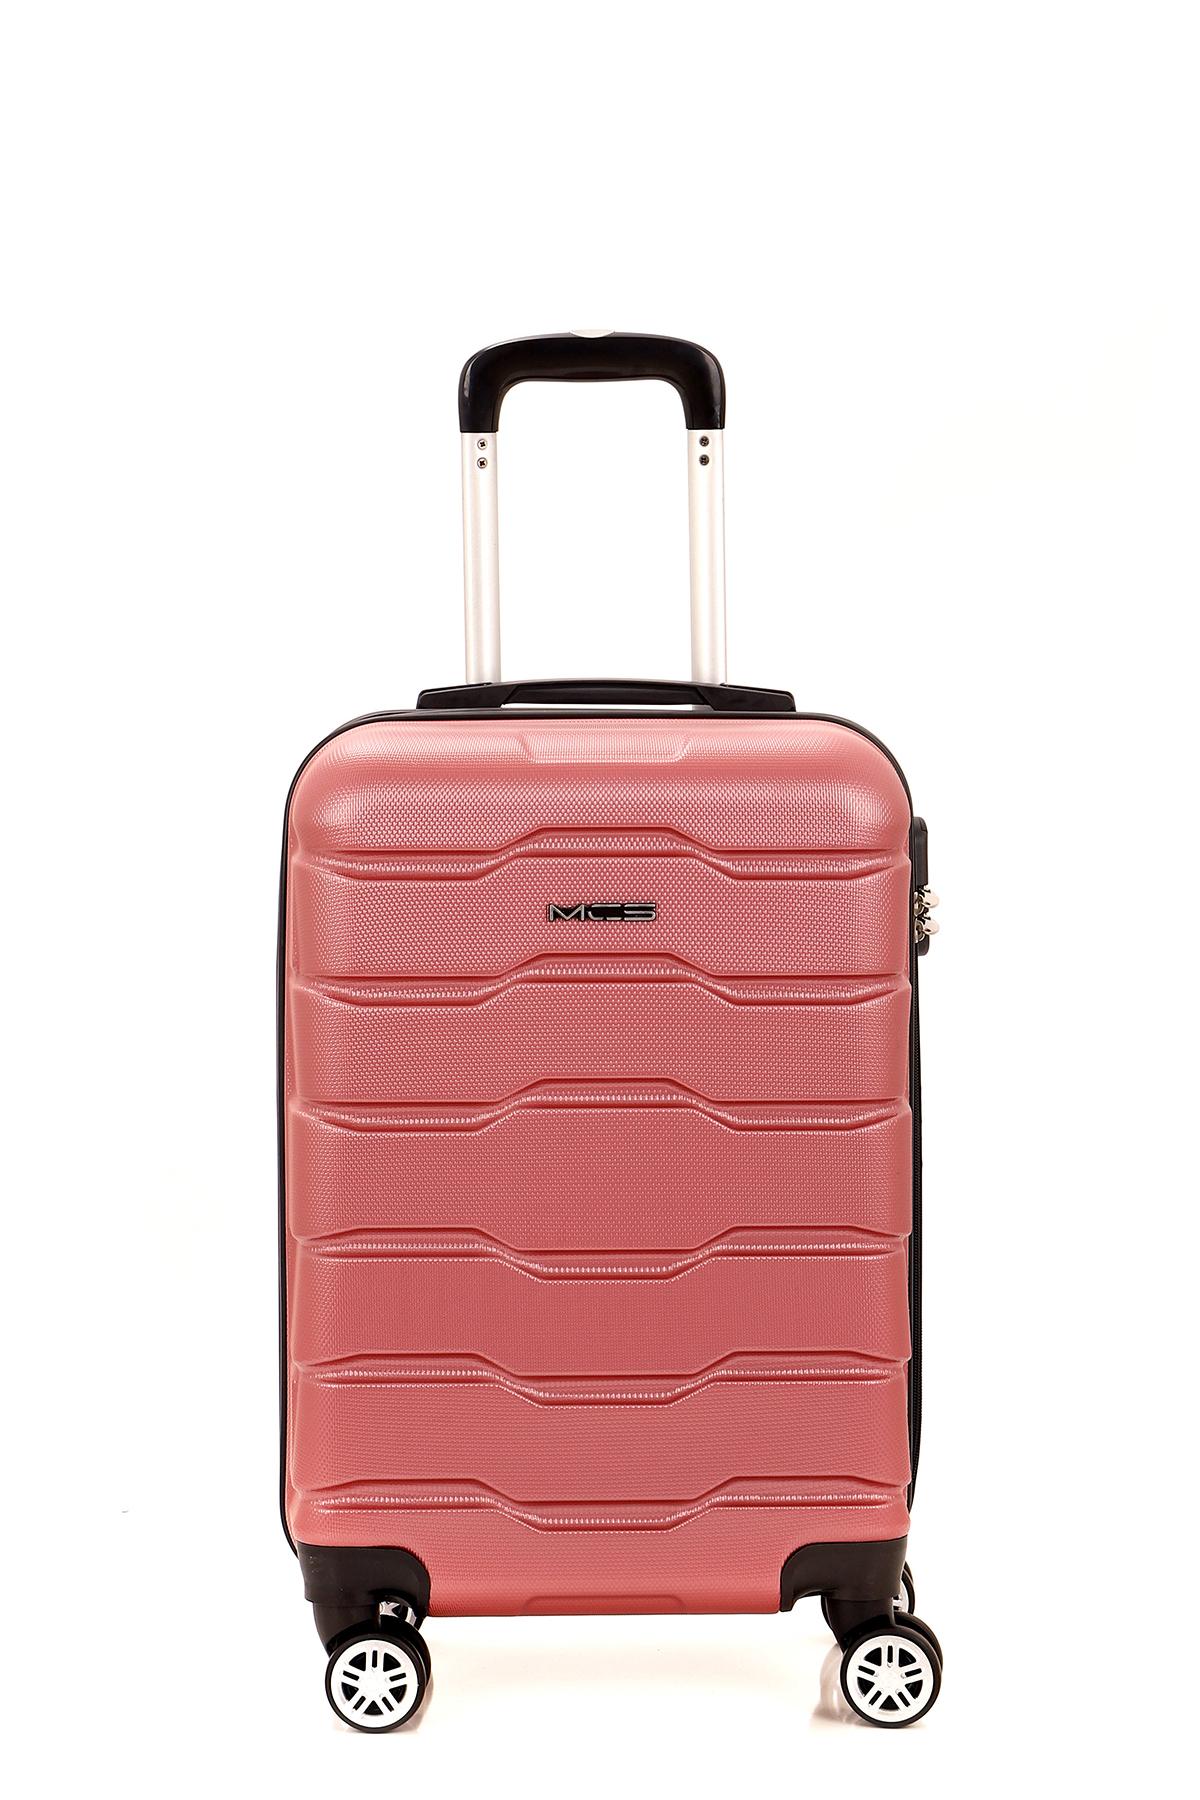 MCS Kofer V302 roze S 55cm